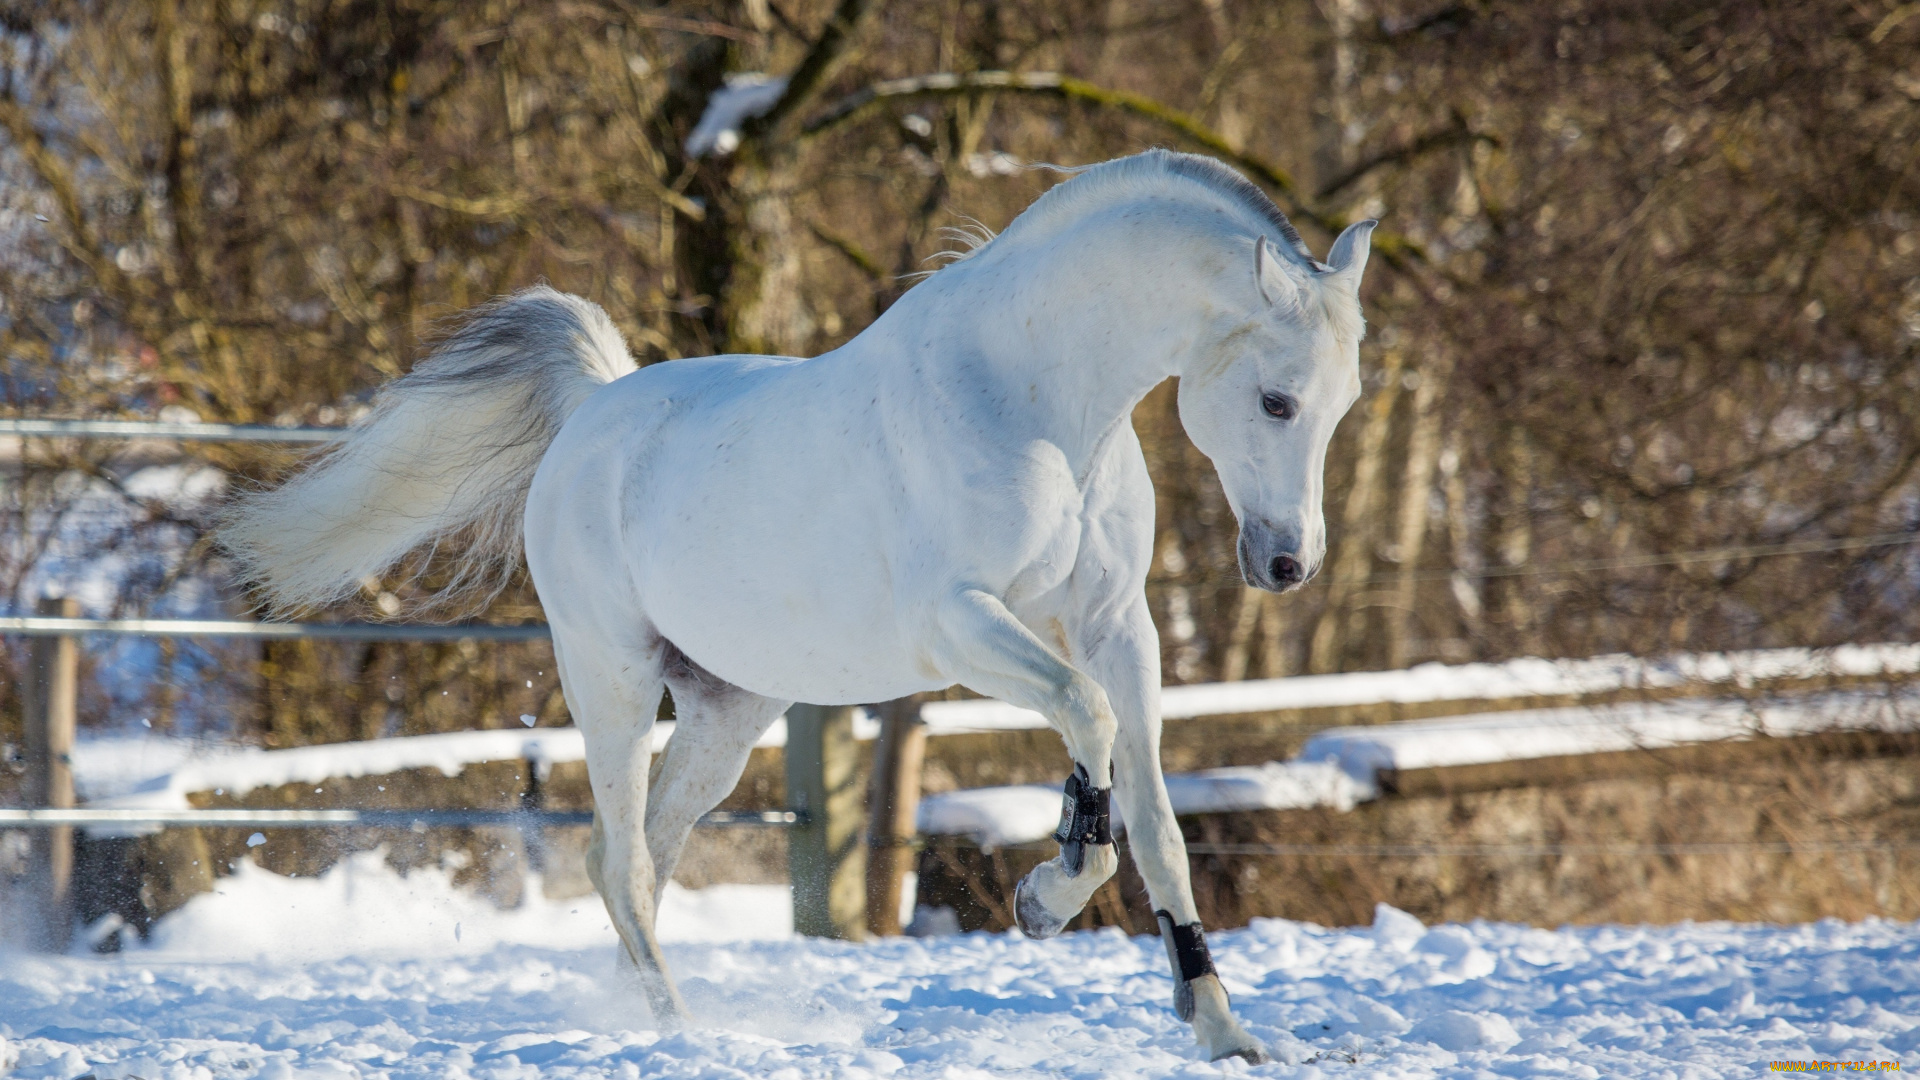 автор, , oliverseitz, животные, лошади, конь, белый, движение, грация, поза, игривый, красавец, зима, снег, загон